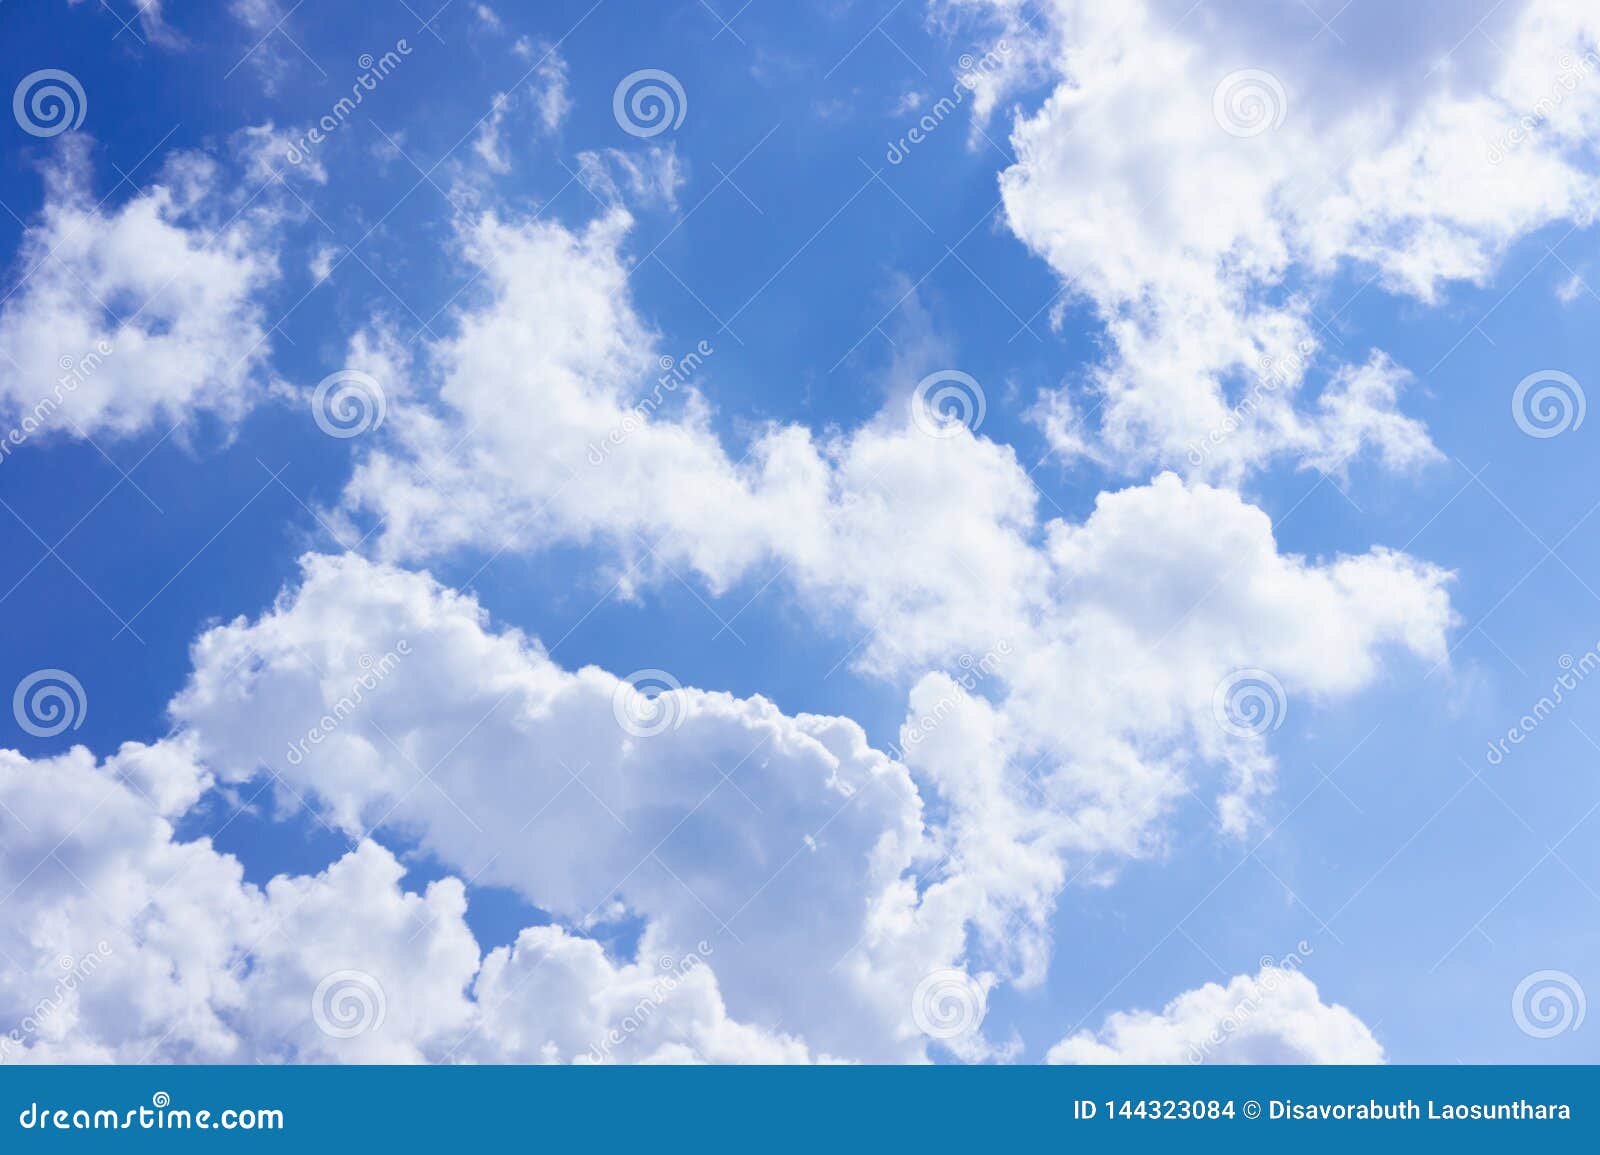 Mây trắng tuyệt đẹp trên bầu trời xanh - Ngày: Đắm mình trong không gian mơ màng, với những tấm hình nền bầu trời xanh rực rỡ và những đám mây trắng xóa tuyệt đẹp. Tận hưởng một ngày tuyệt vời trên trời xanh, tìm kiếm sự yên bình và sự tiếp tục trong cuộc sống!